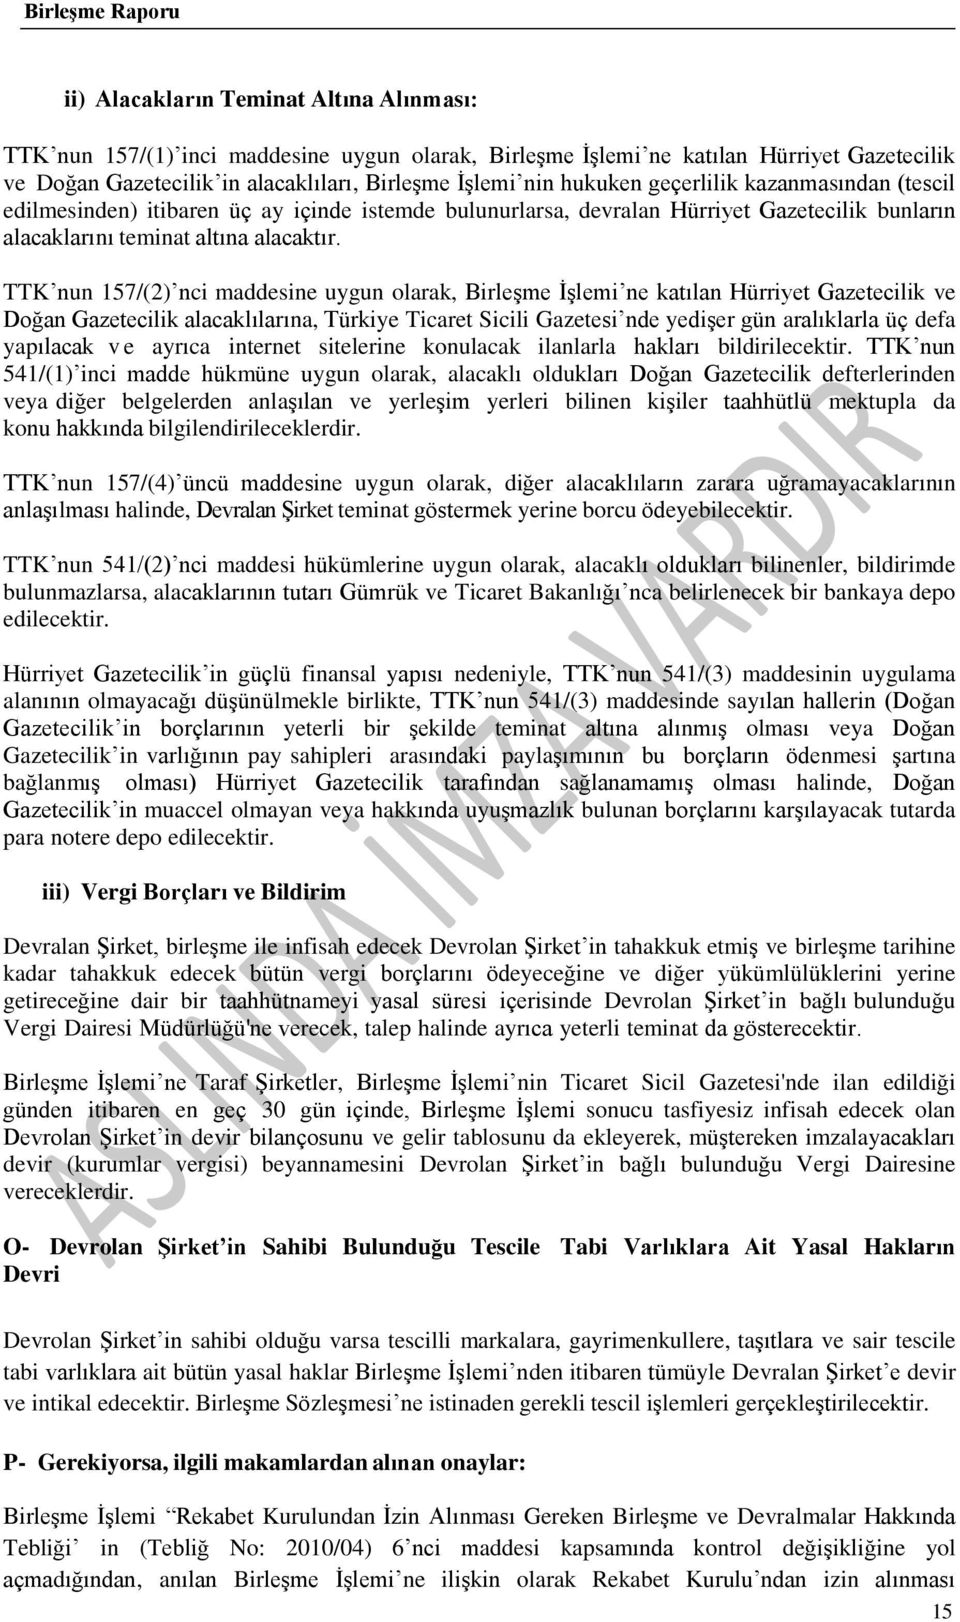 TTK nun 157/(2) nci maddesine uygun olarak, Birleşme İşlemi ne katılan Hürriyet Gazetecilik ve Doğan Gazetecilik alacaklılarına, Türkiye Ticaret Sicili Gazetesi nde yedişer gün aralıklarla üç defa